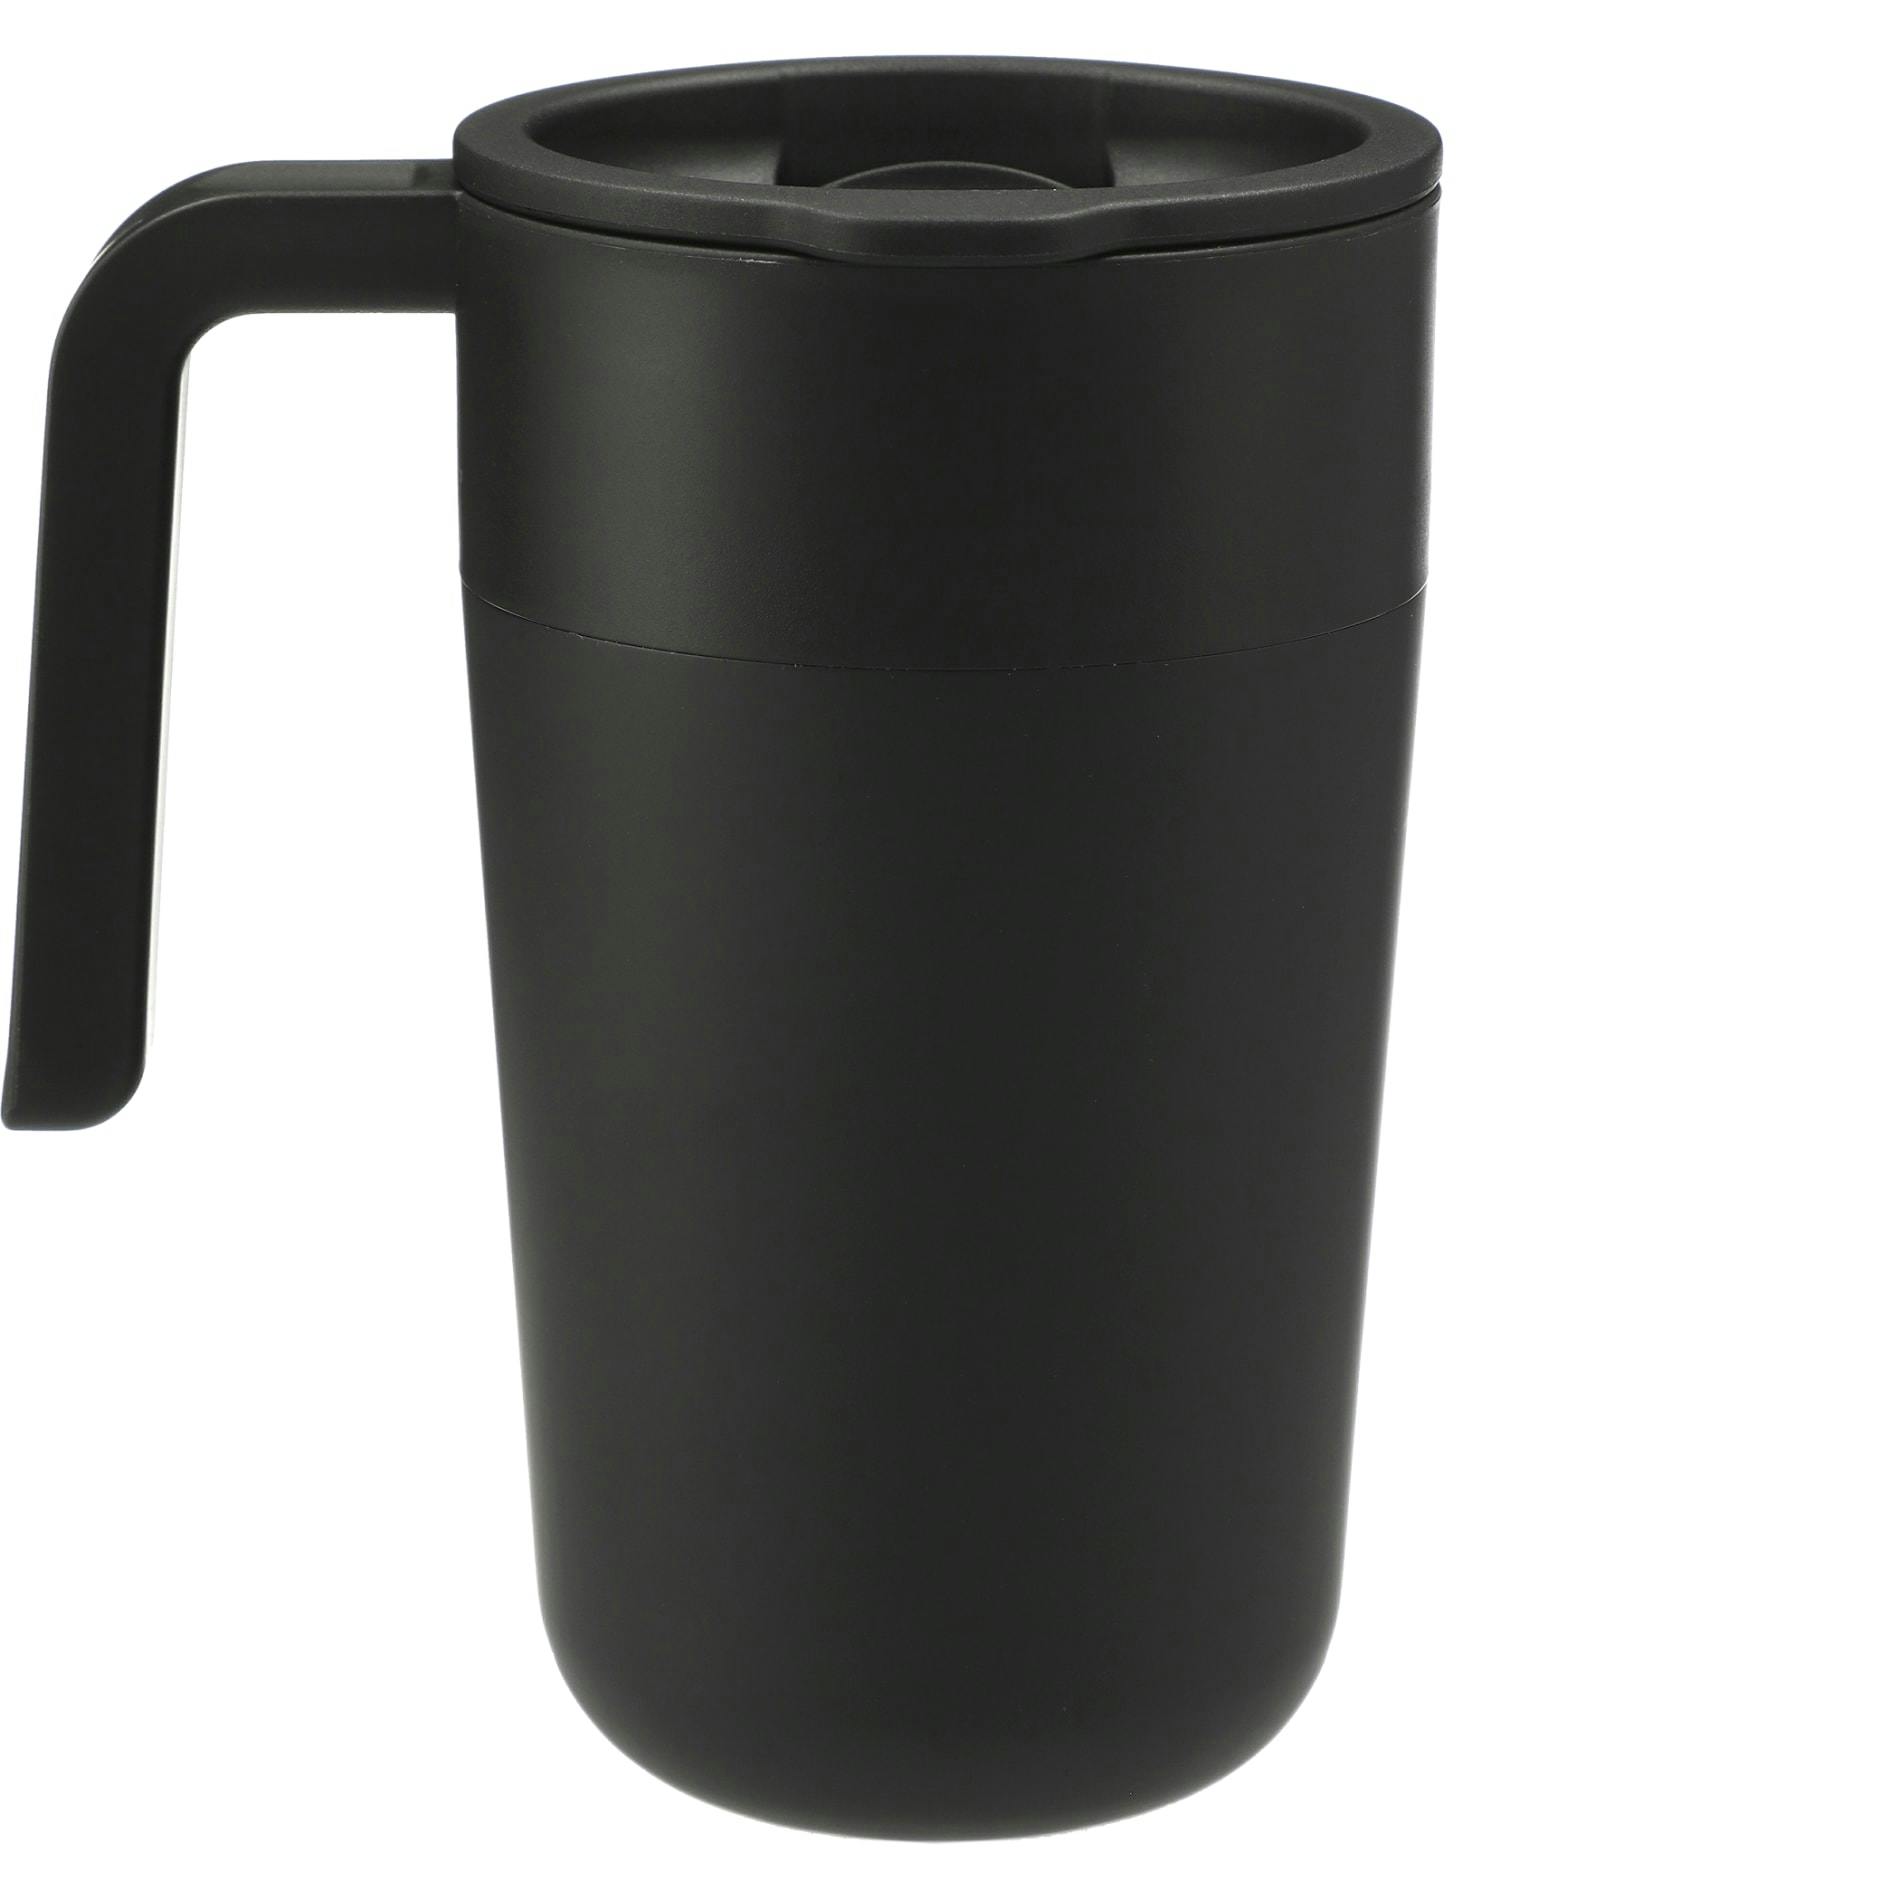 Sigrid 16oz ECO Mug with Recycled Plastic - additional Image 3